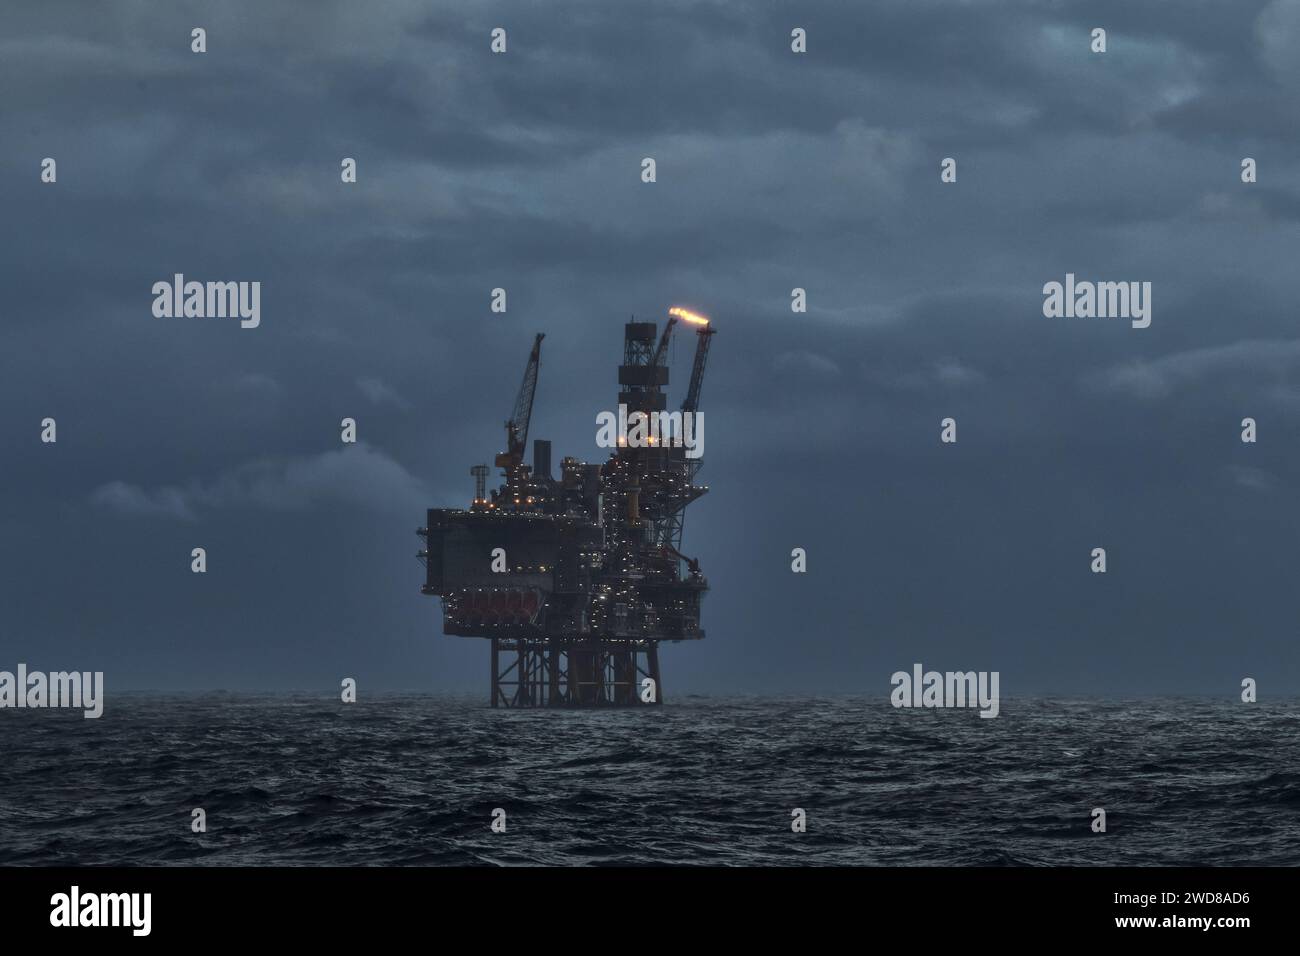 Image d'une plate-forme de forage pétrolier et gazier offshore dans la mer par temps orageux au crépuscule, avec torche de gaz venant du tuyau. Banque D'Images